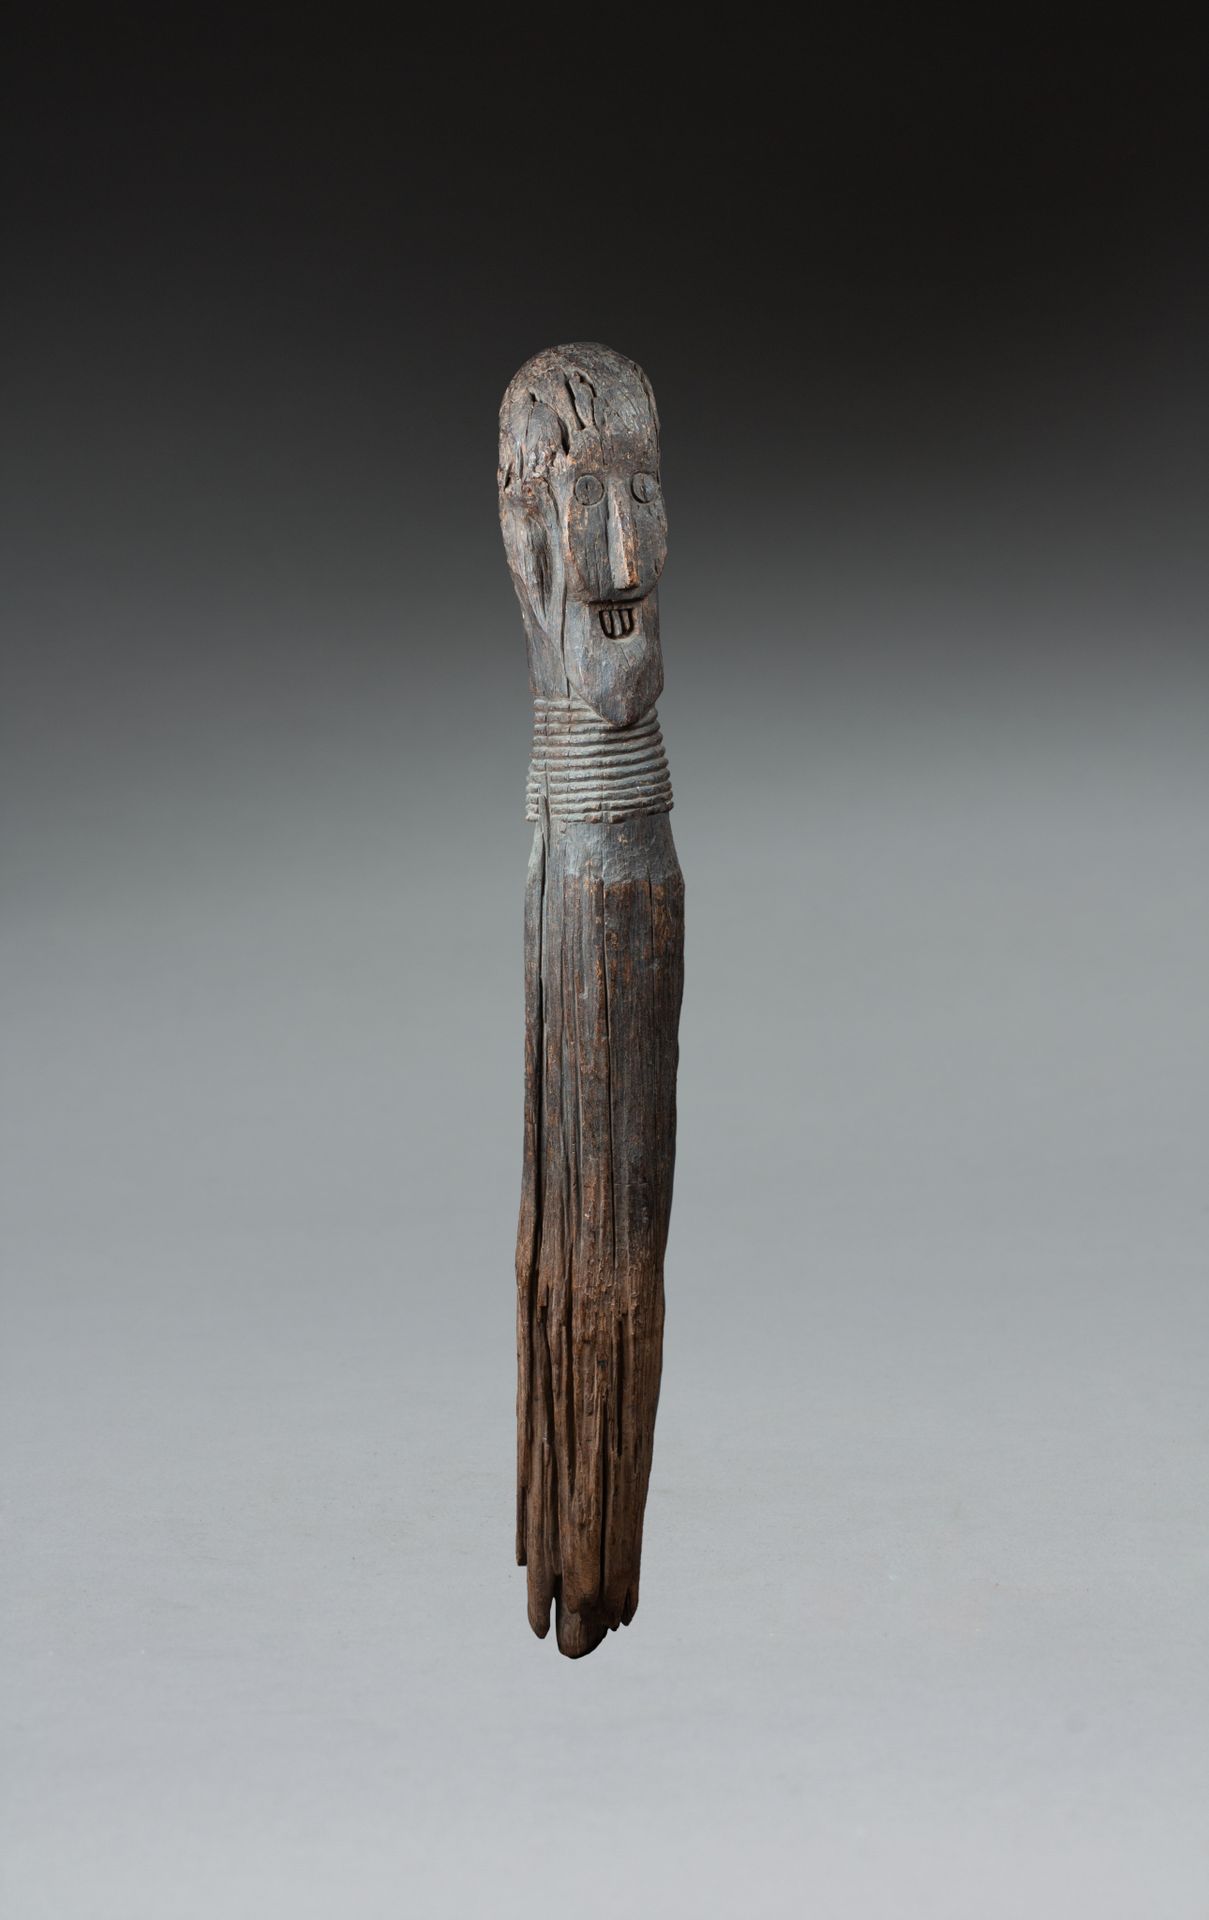 Poteau cultuel 显示的是加达社会的一位重要人物，表情狂野而好战。 

硬木有古老的棕色铜锈，有时间和风化的痕迹和侵蚀。

埃塞俄比亚康索，19世纪&hellip;